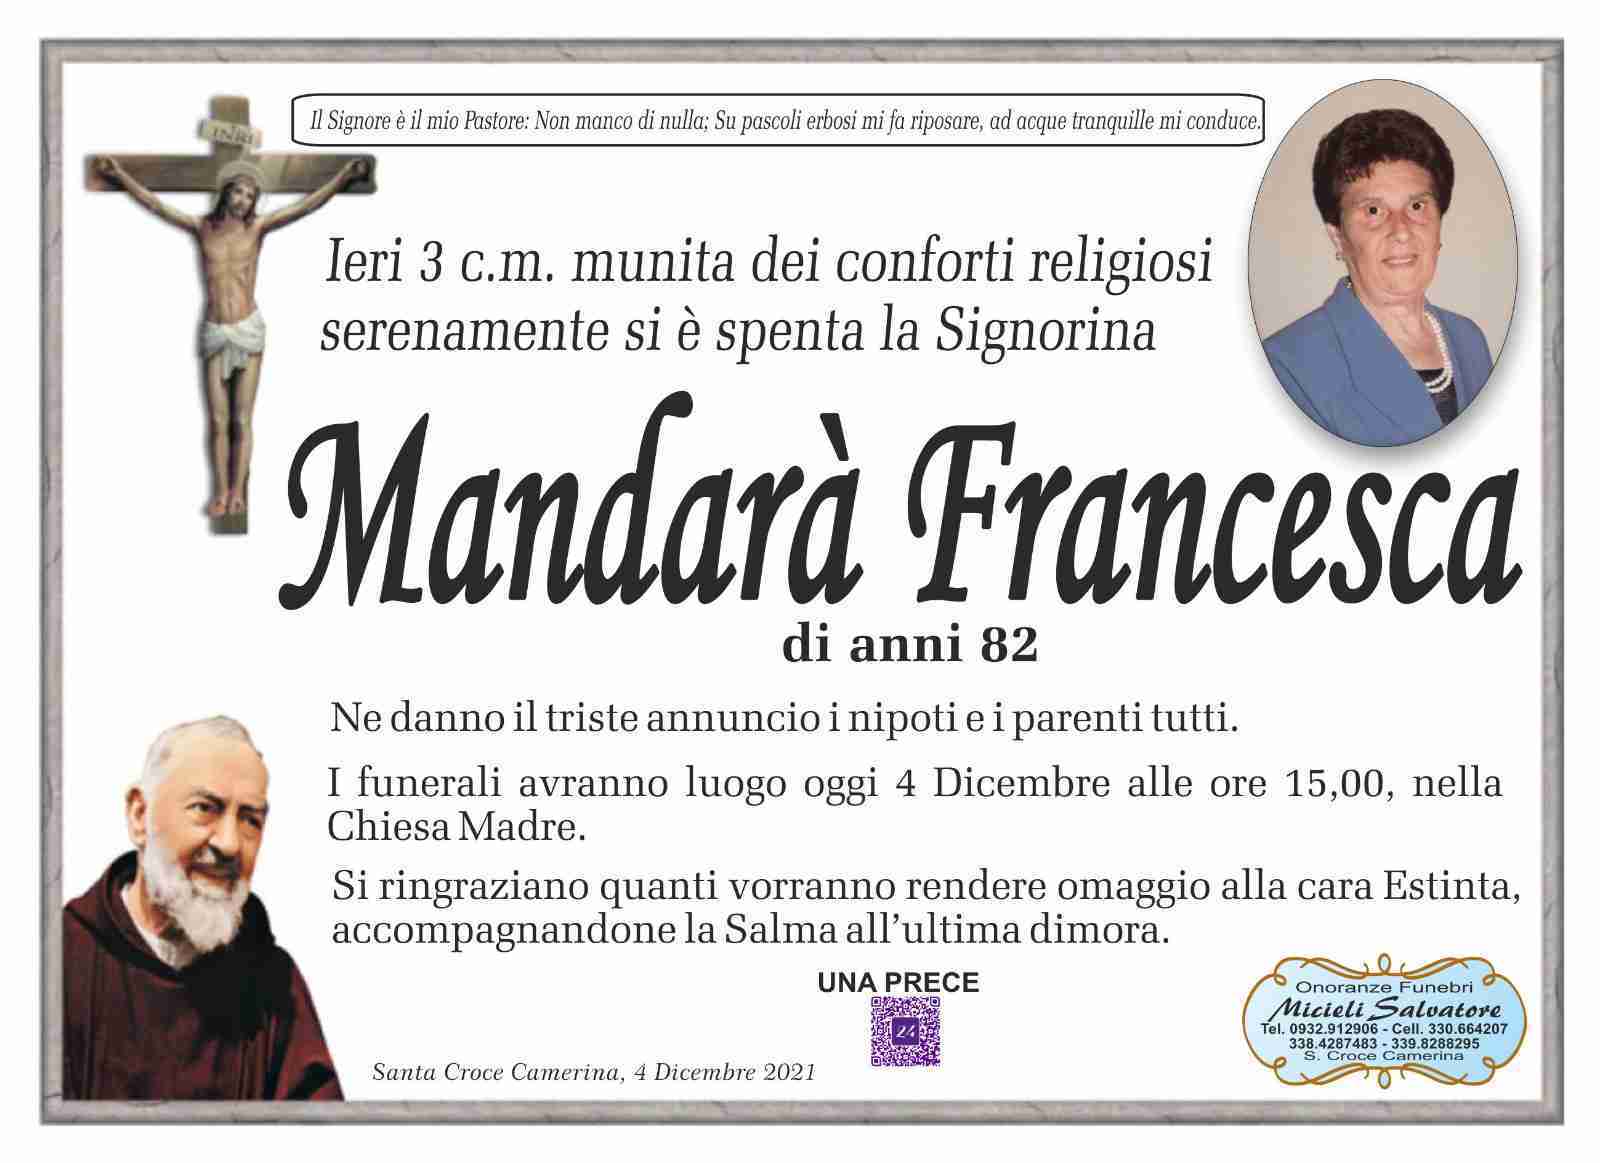 Francesca Mandarà